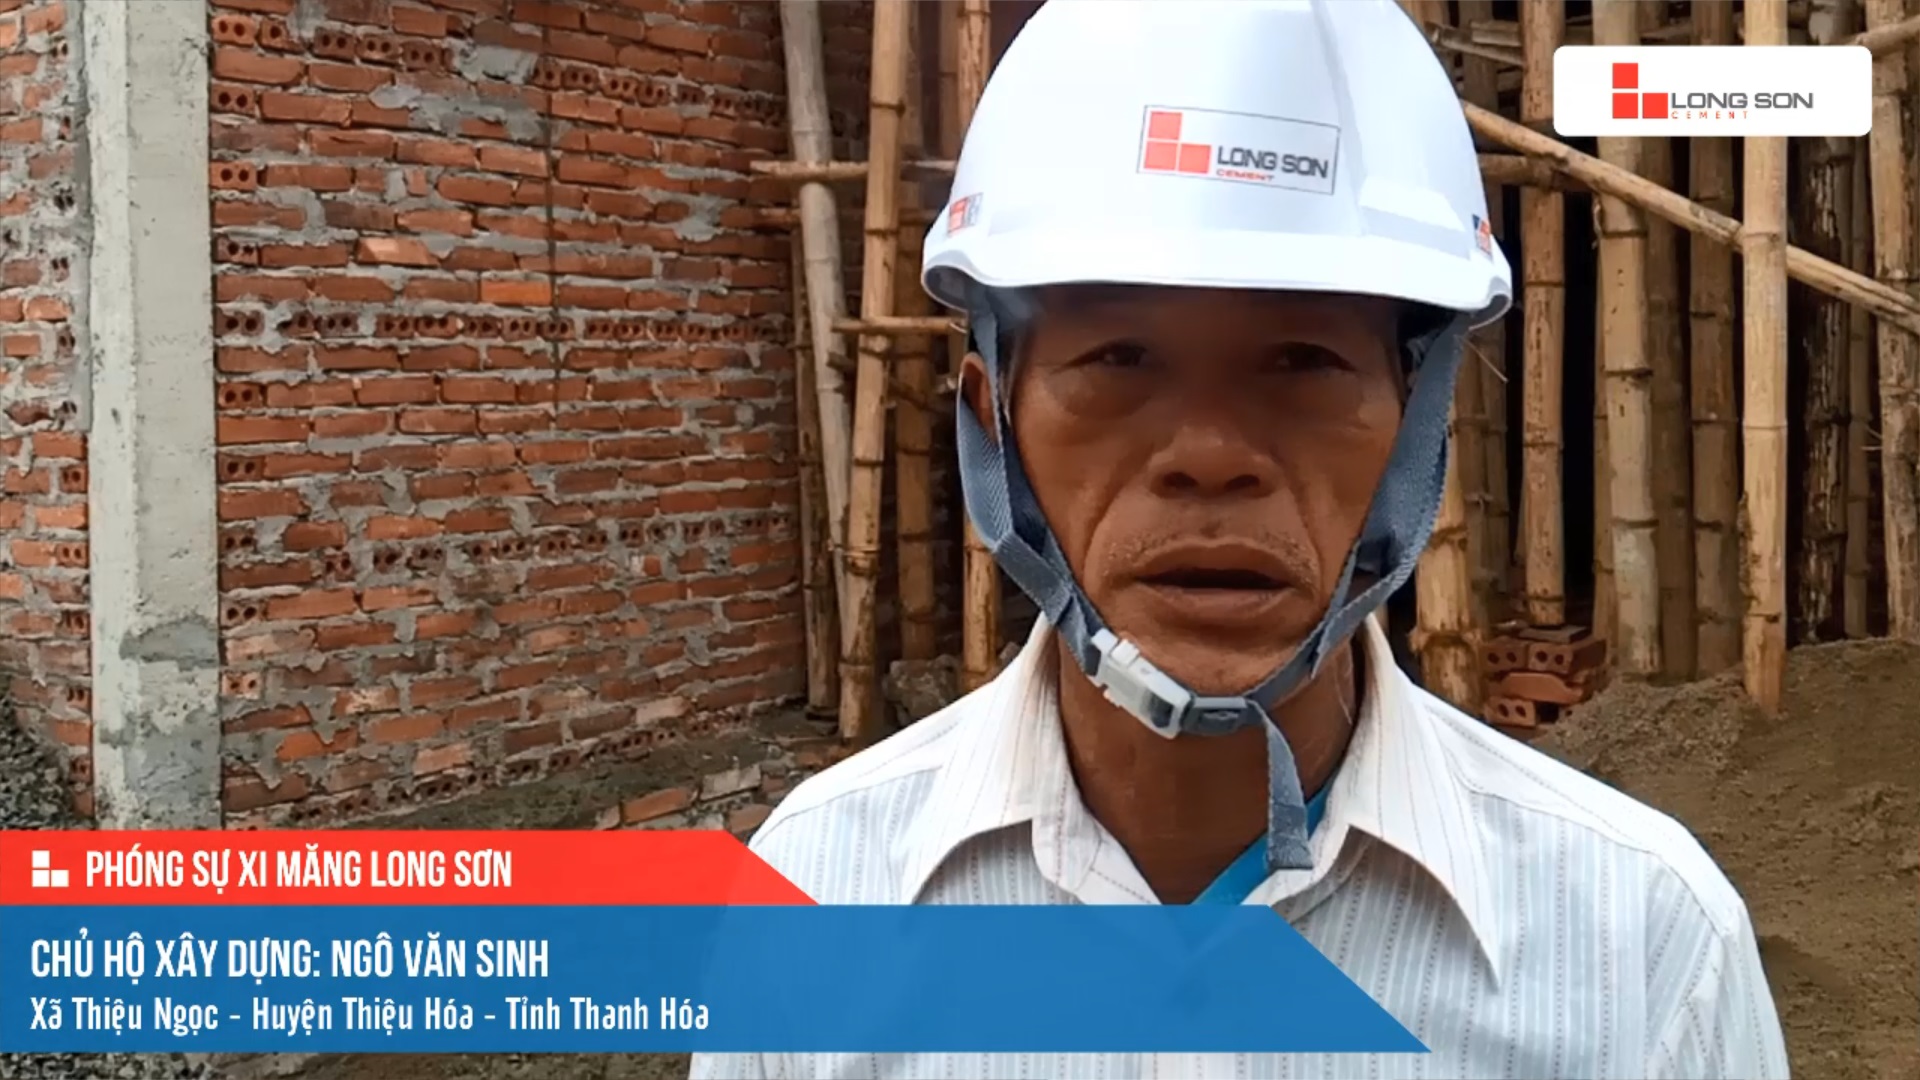 Phóng sự công trình sử dụng Xi măng Long Sơn tại Thanh Hóa 04.03.2021